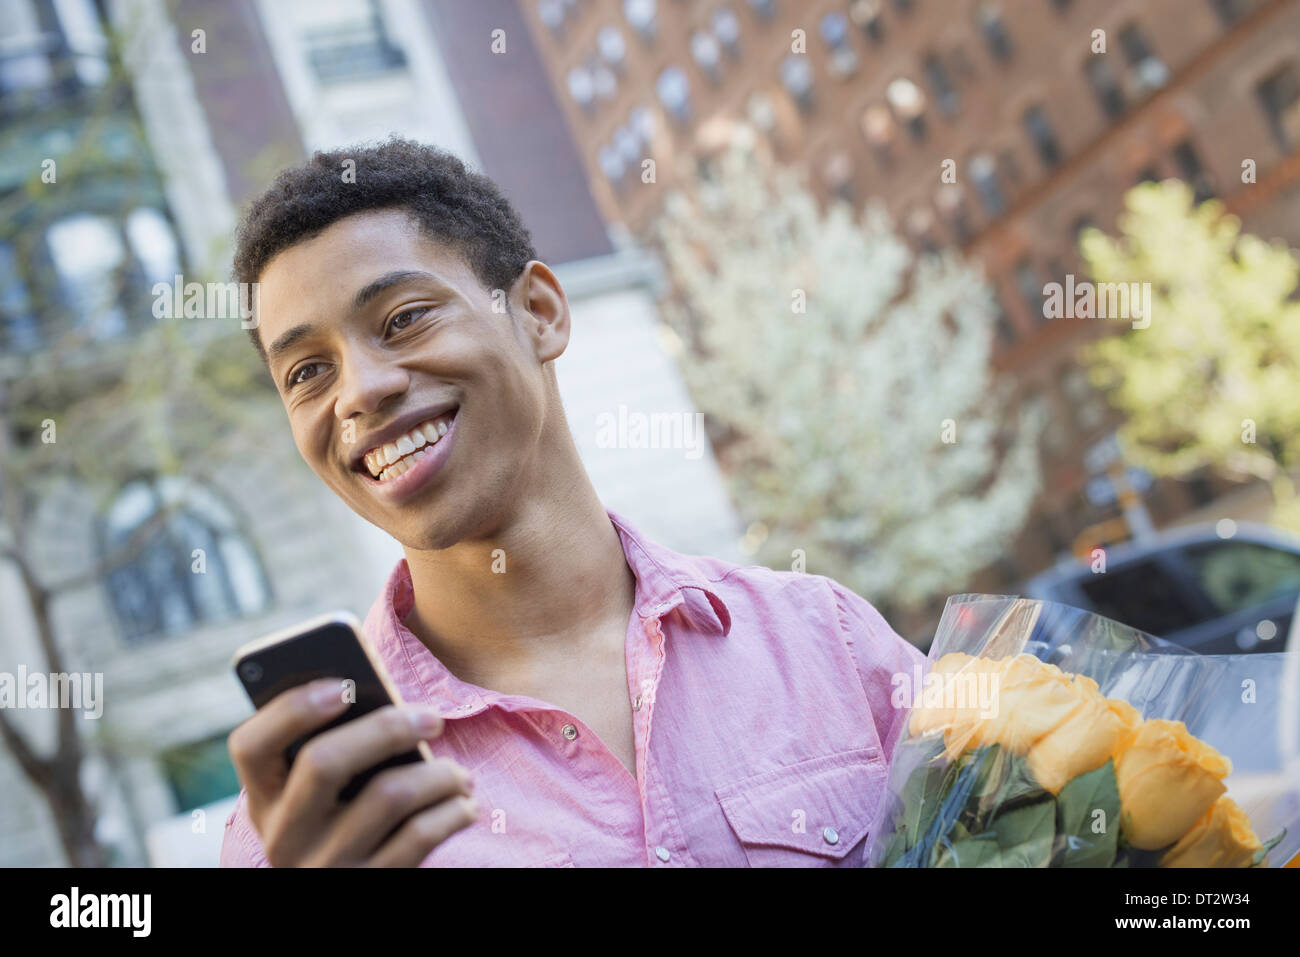 Urban Lifestyle A junger Mann mit kurzen schwarzen Haaren, trägt ein rosa casual Hemd Holding ein smart phone Stockfoto